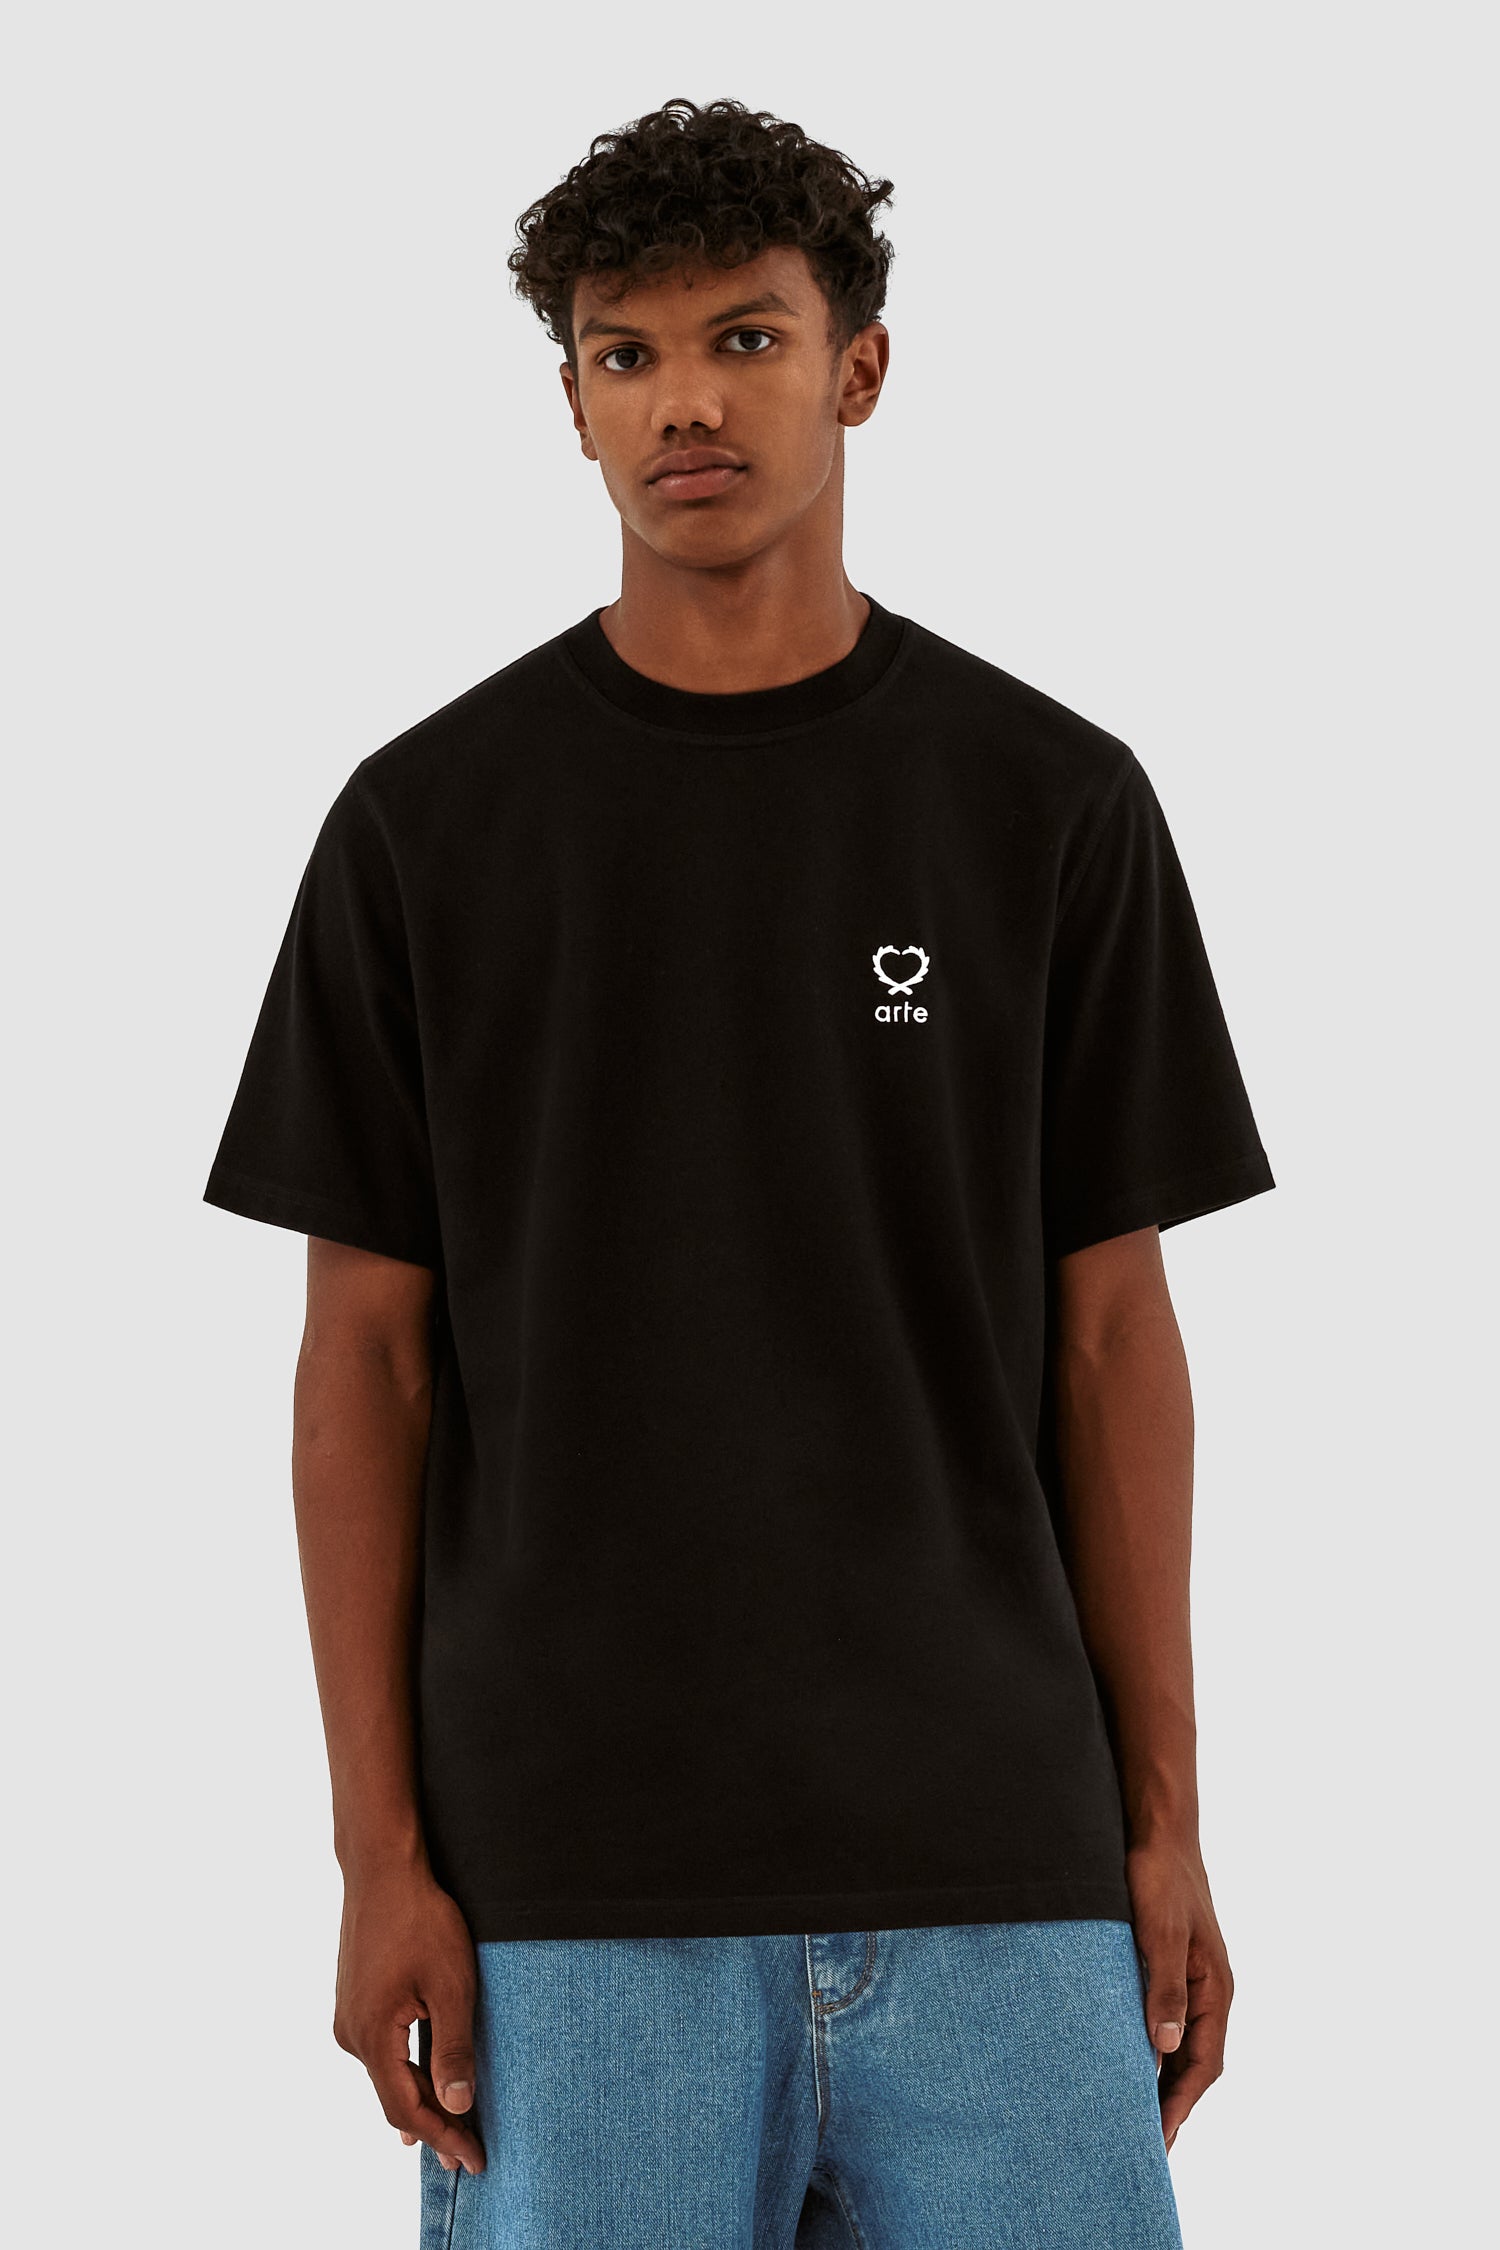 Teo - T-shirt à petit cœur - Noir